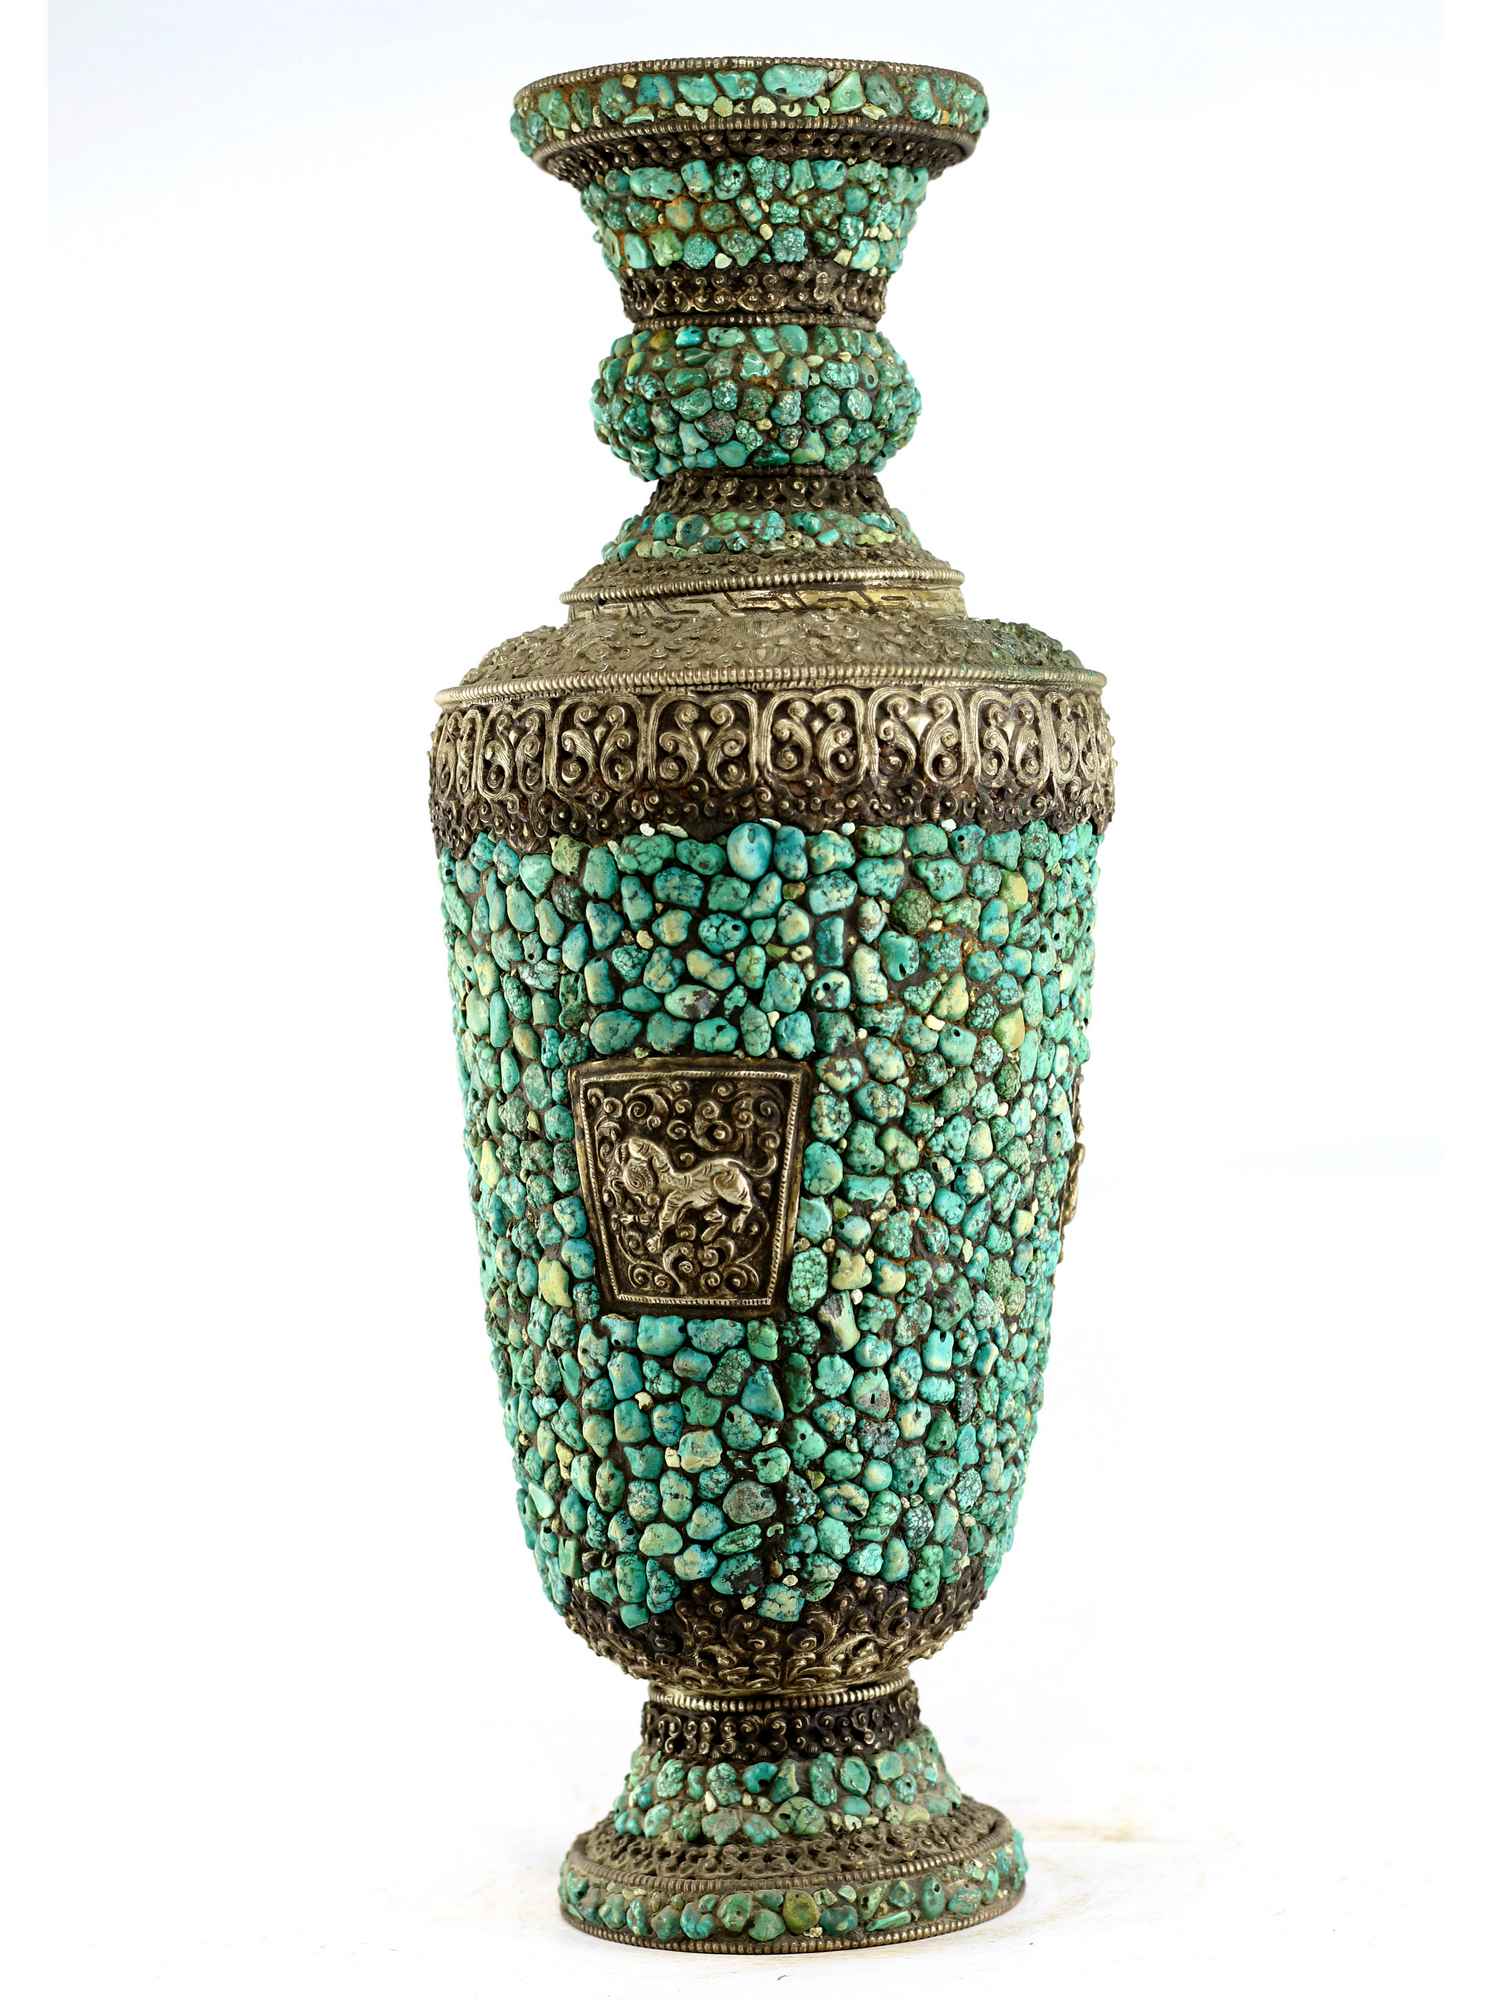 White Metal Tibetan Flower Vase : Vase With stone Setting, real Tourquise